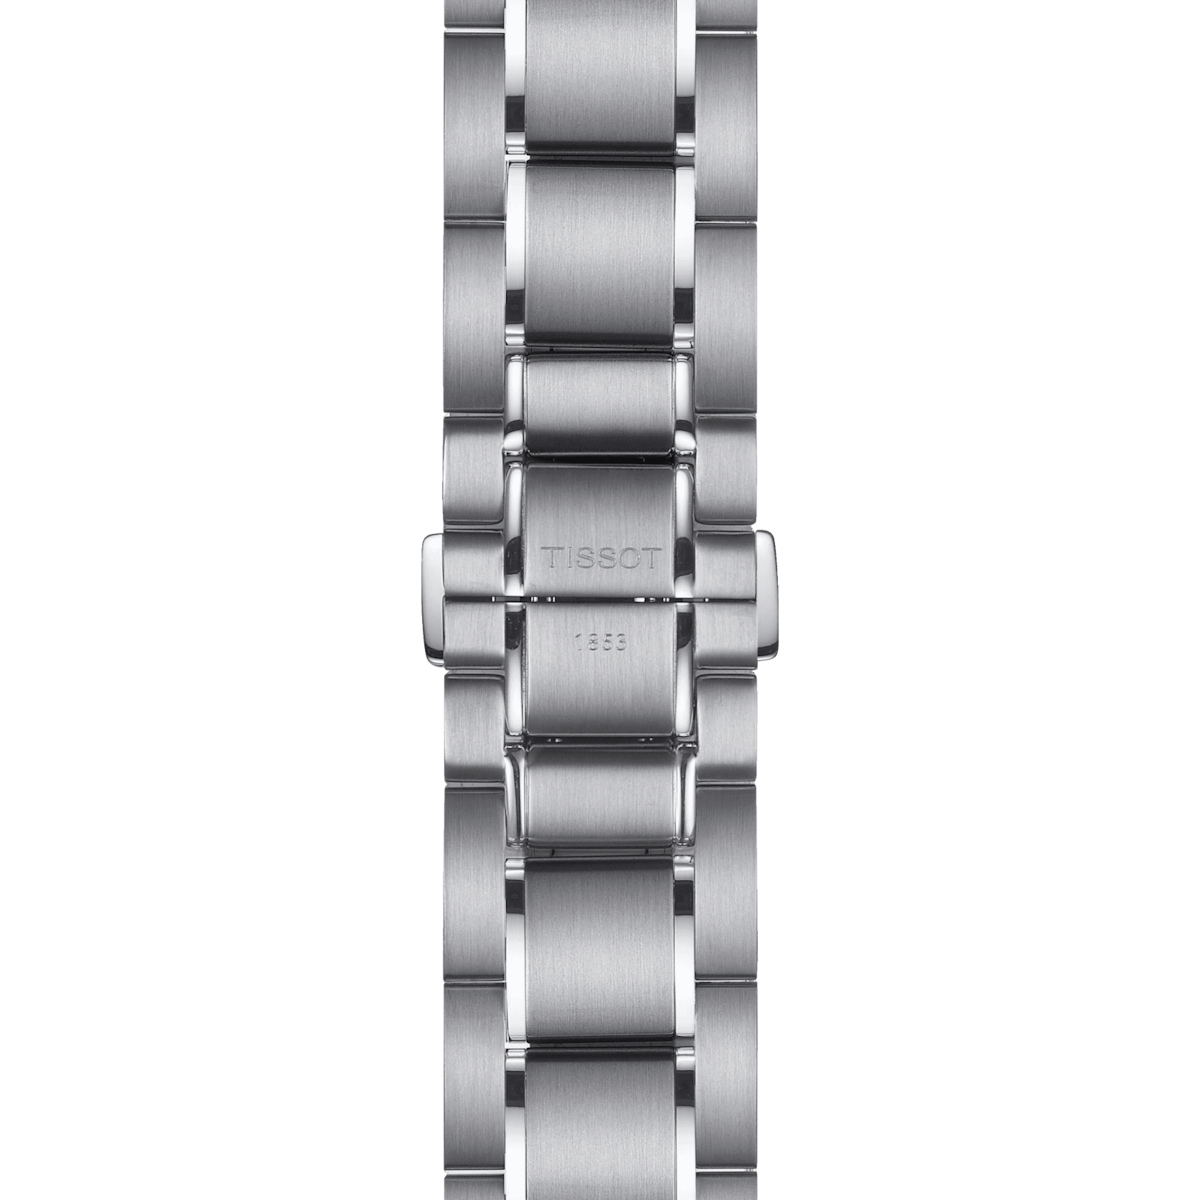 Tissot - T-Sport PRS 516 Stainless Steel Bracelet Black Dial Men's Watch - 100.417.11.051.01